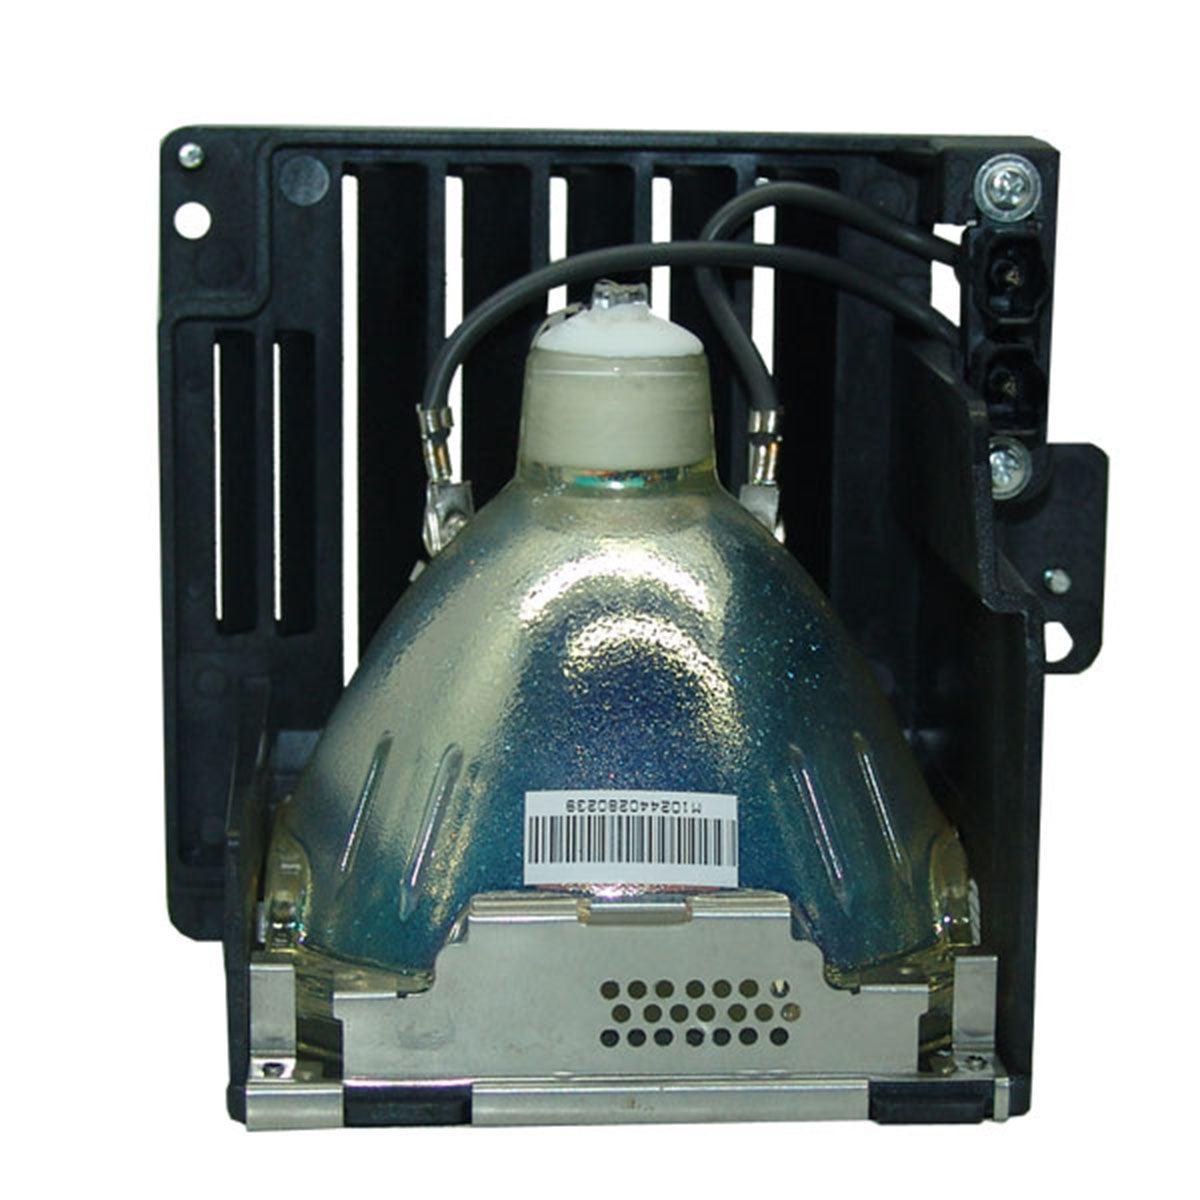 Panasonic ET-SLMP101 Compatible Projector Lamp Module